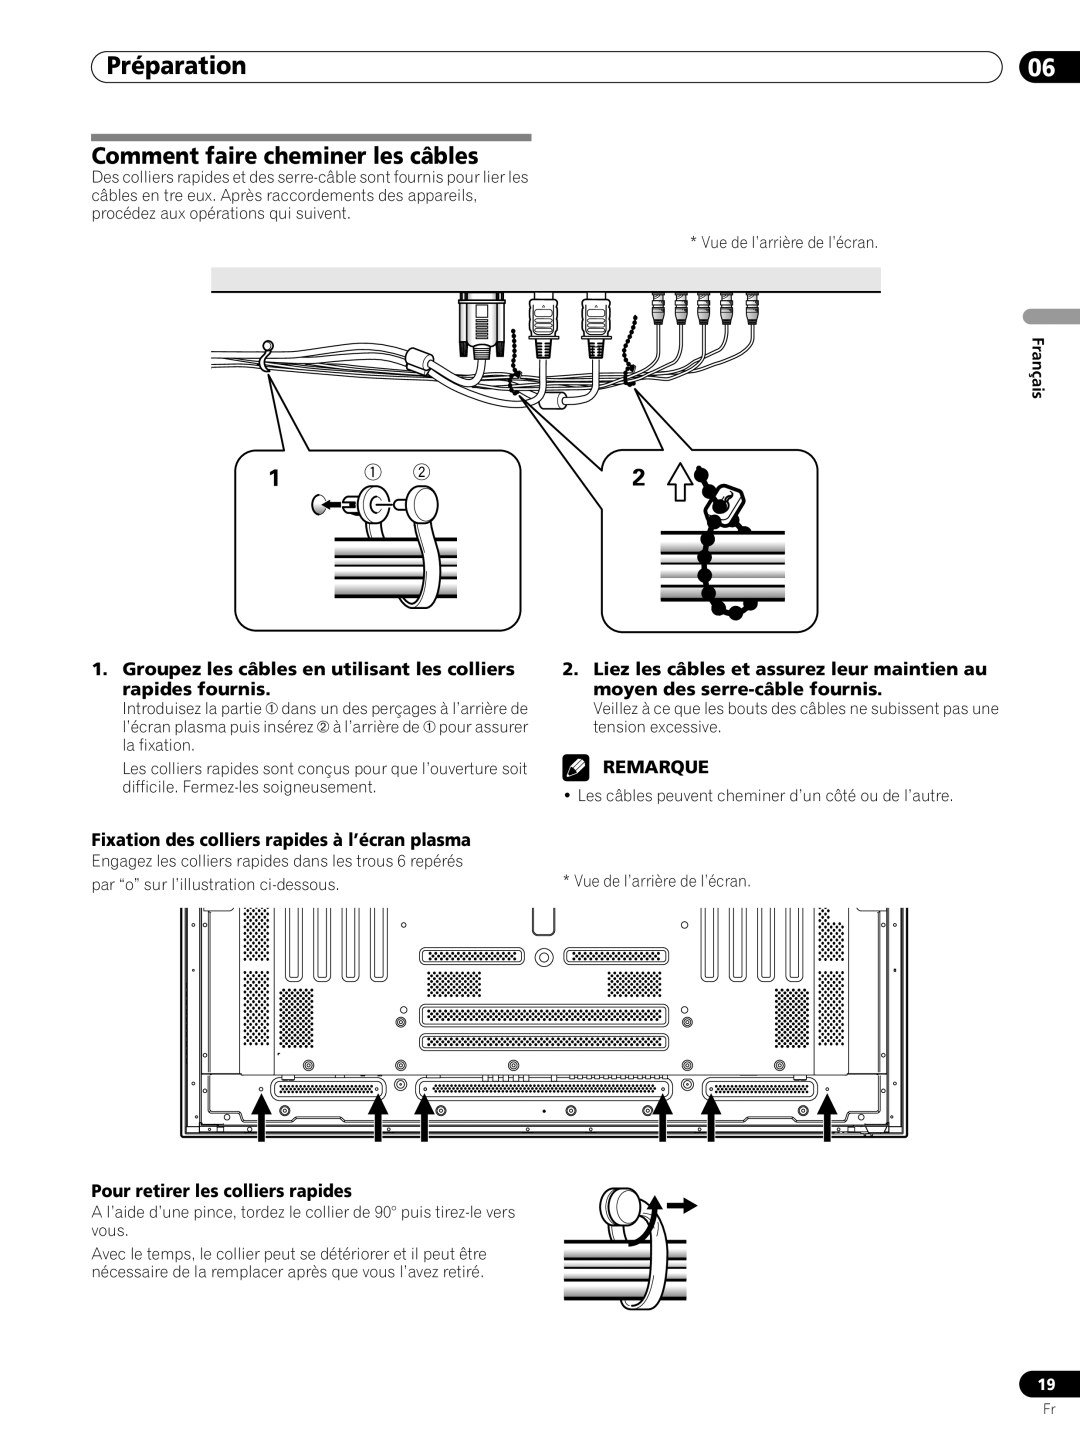 Pioneer PRO-FHD1 Comment faire cheminer les câbles, Préparation, Fixation des colliers rapides à l’écran plasma, Remarque 